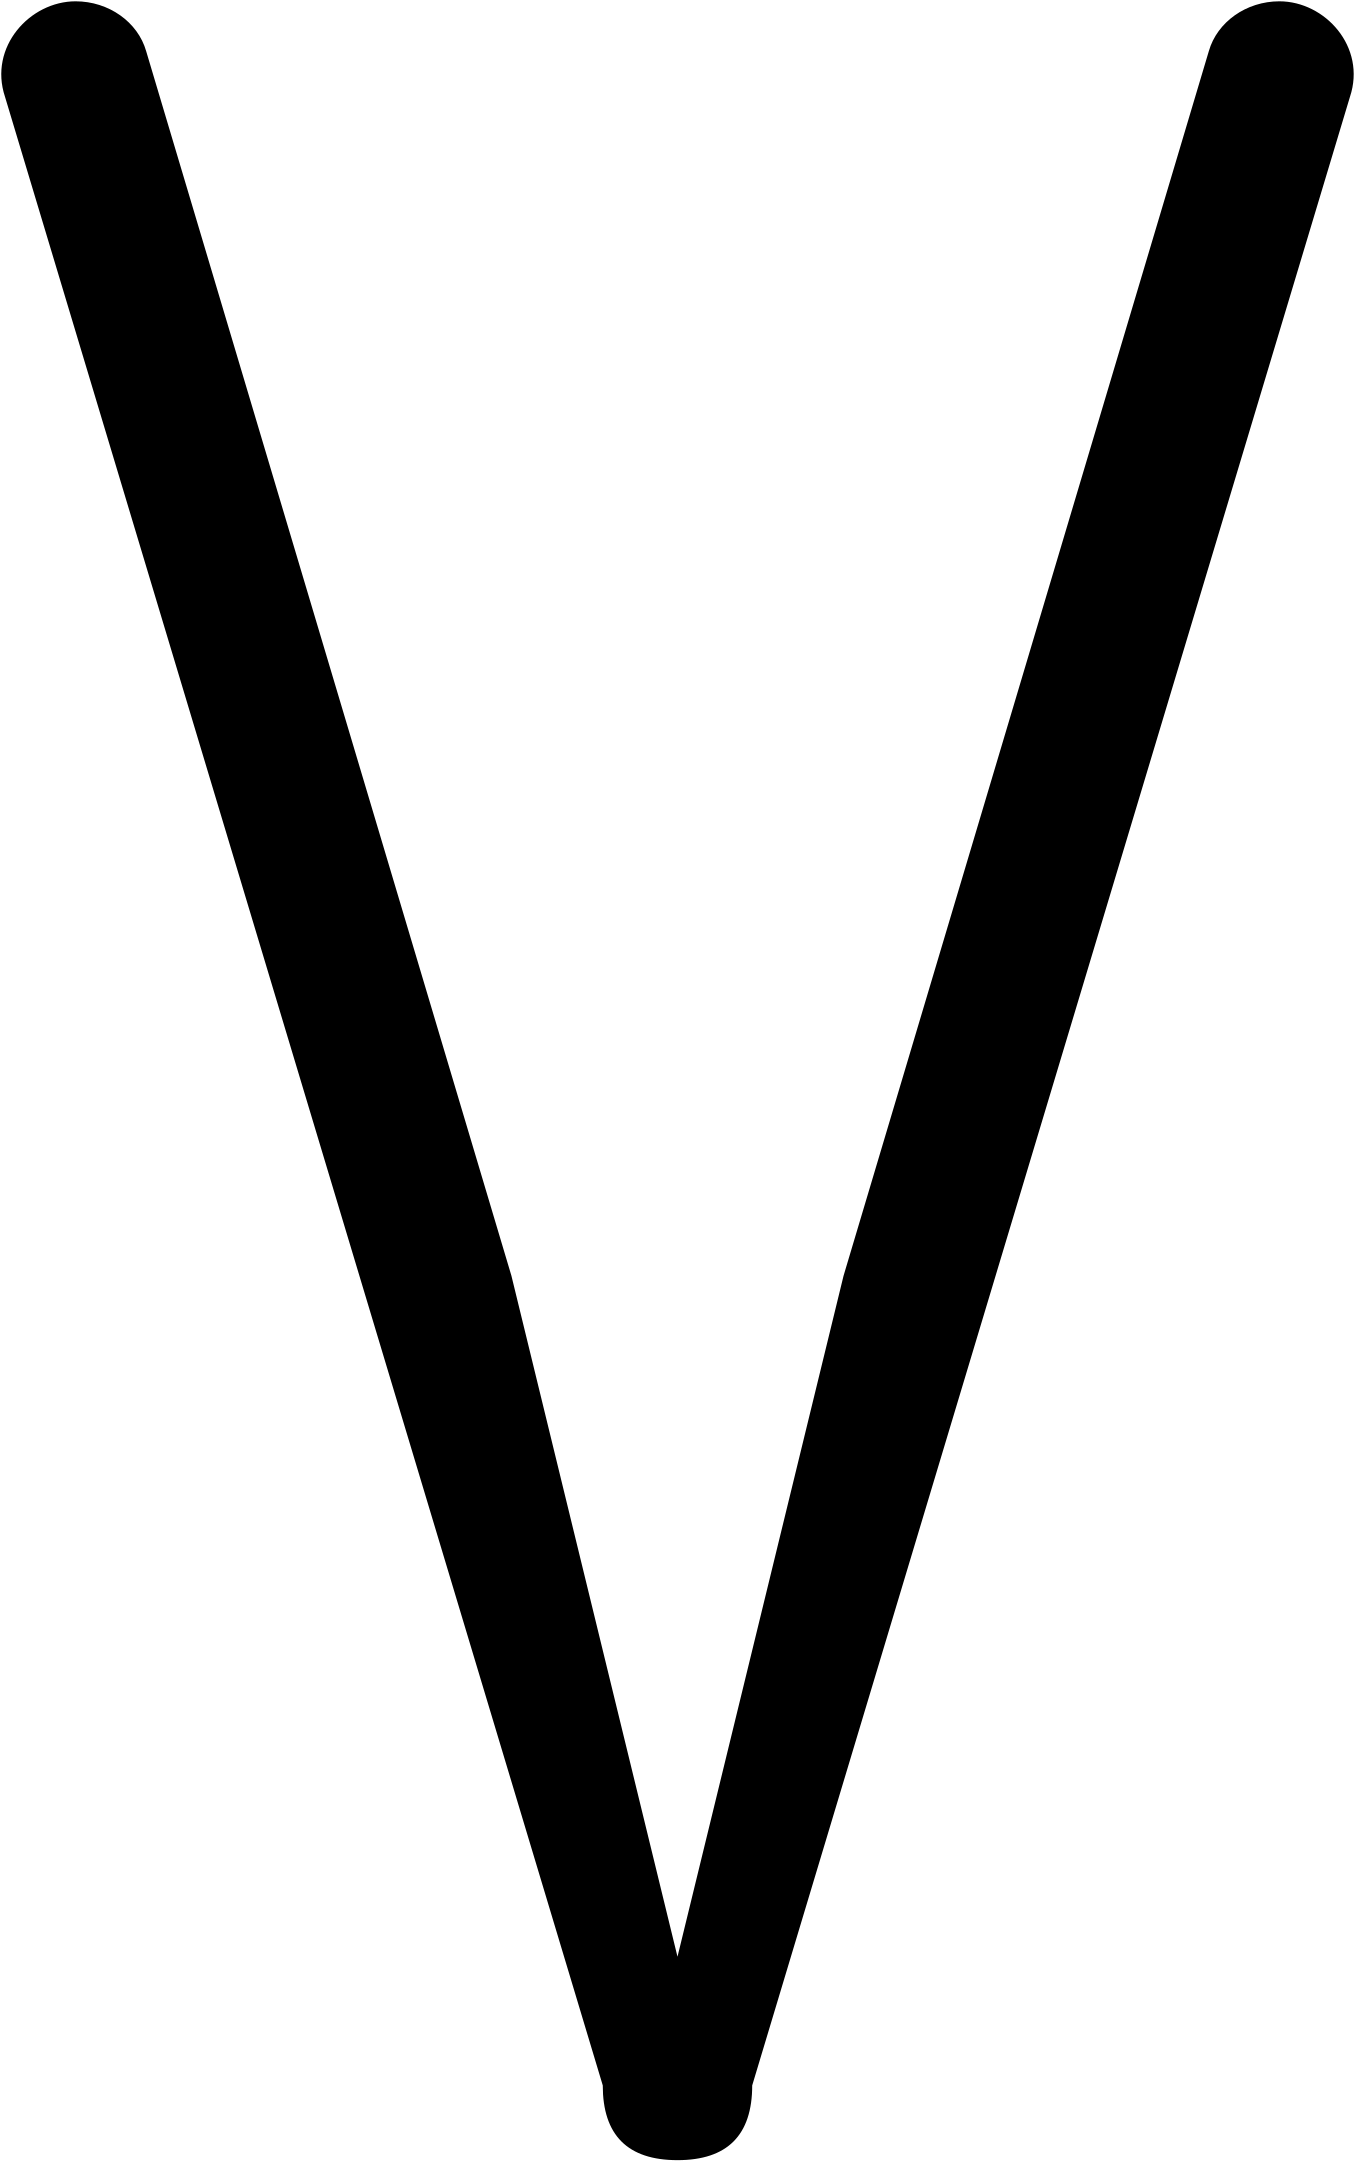 Open - Thin Down Arrow Icon (2000x2667)